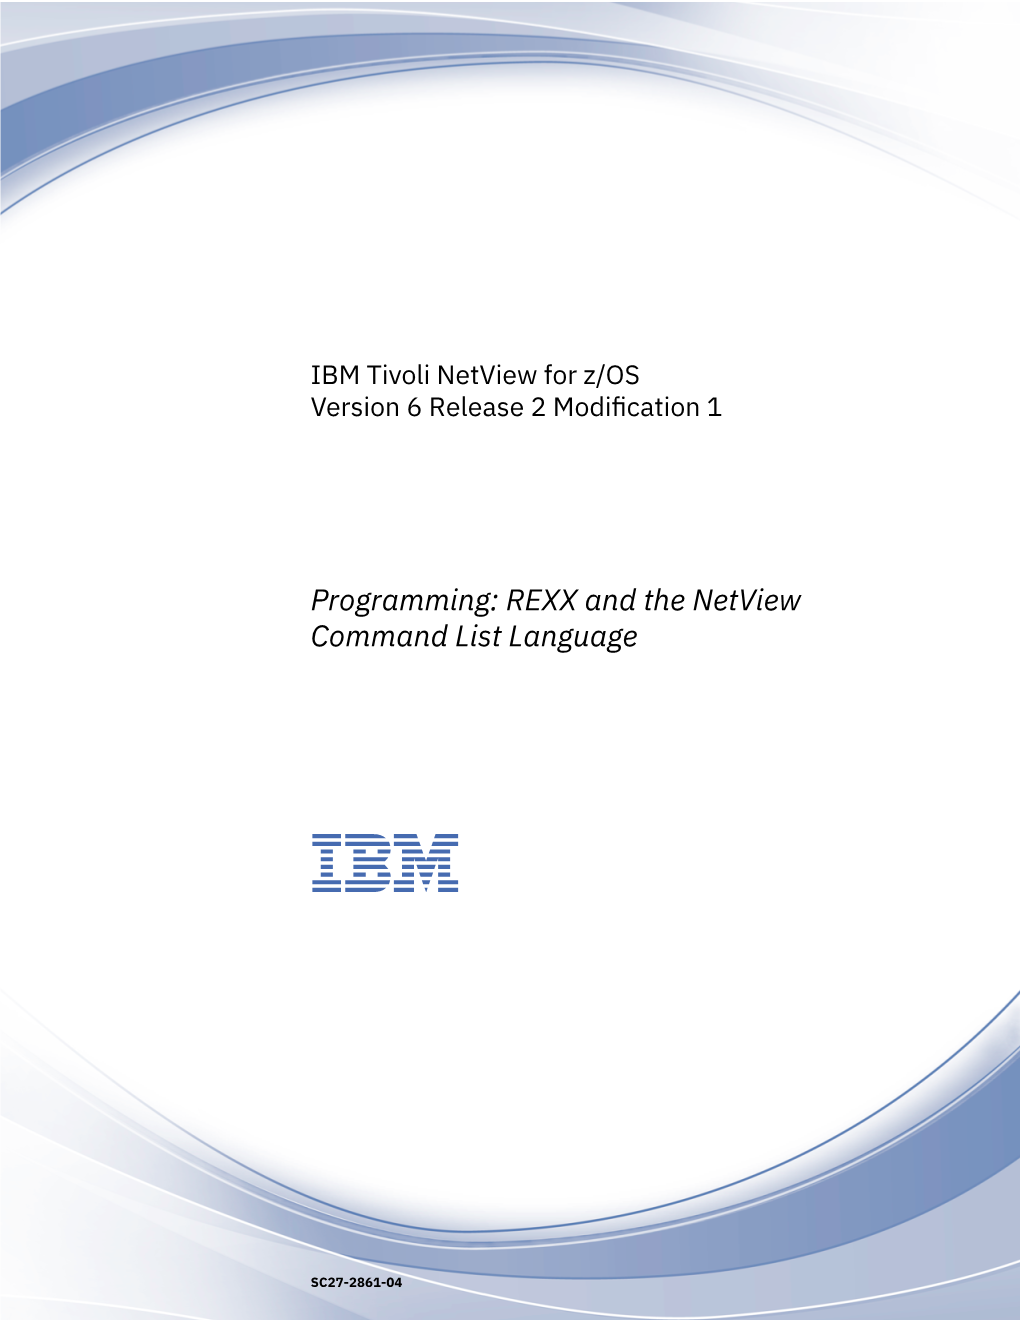 IBM Tivoli Netview for Z/OS: Programming: REXX and The